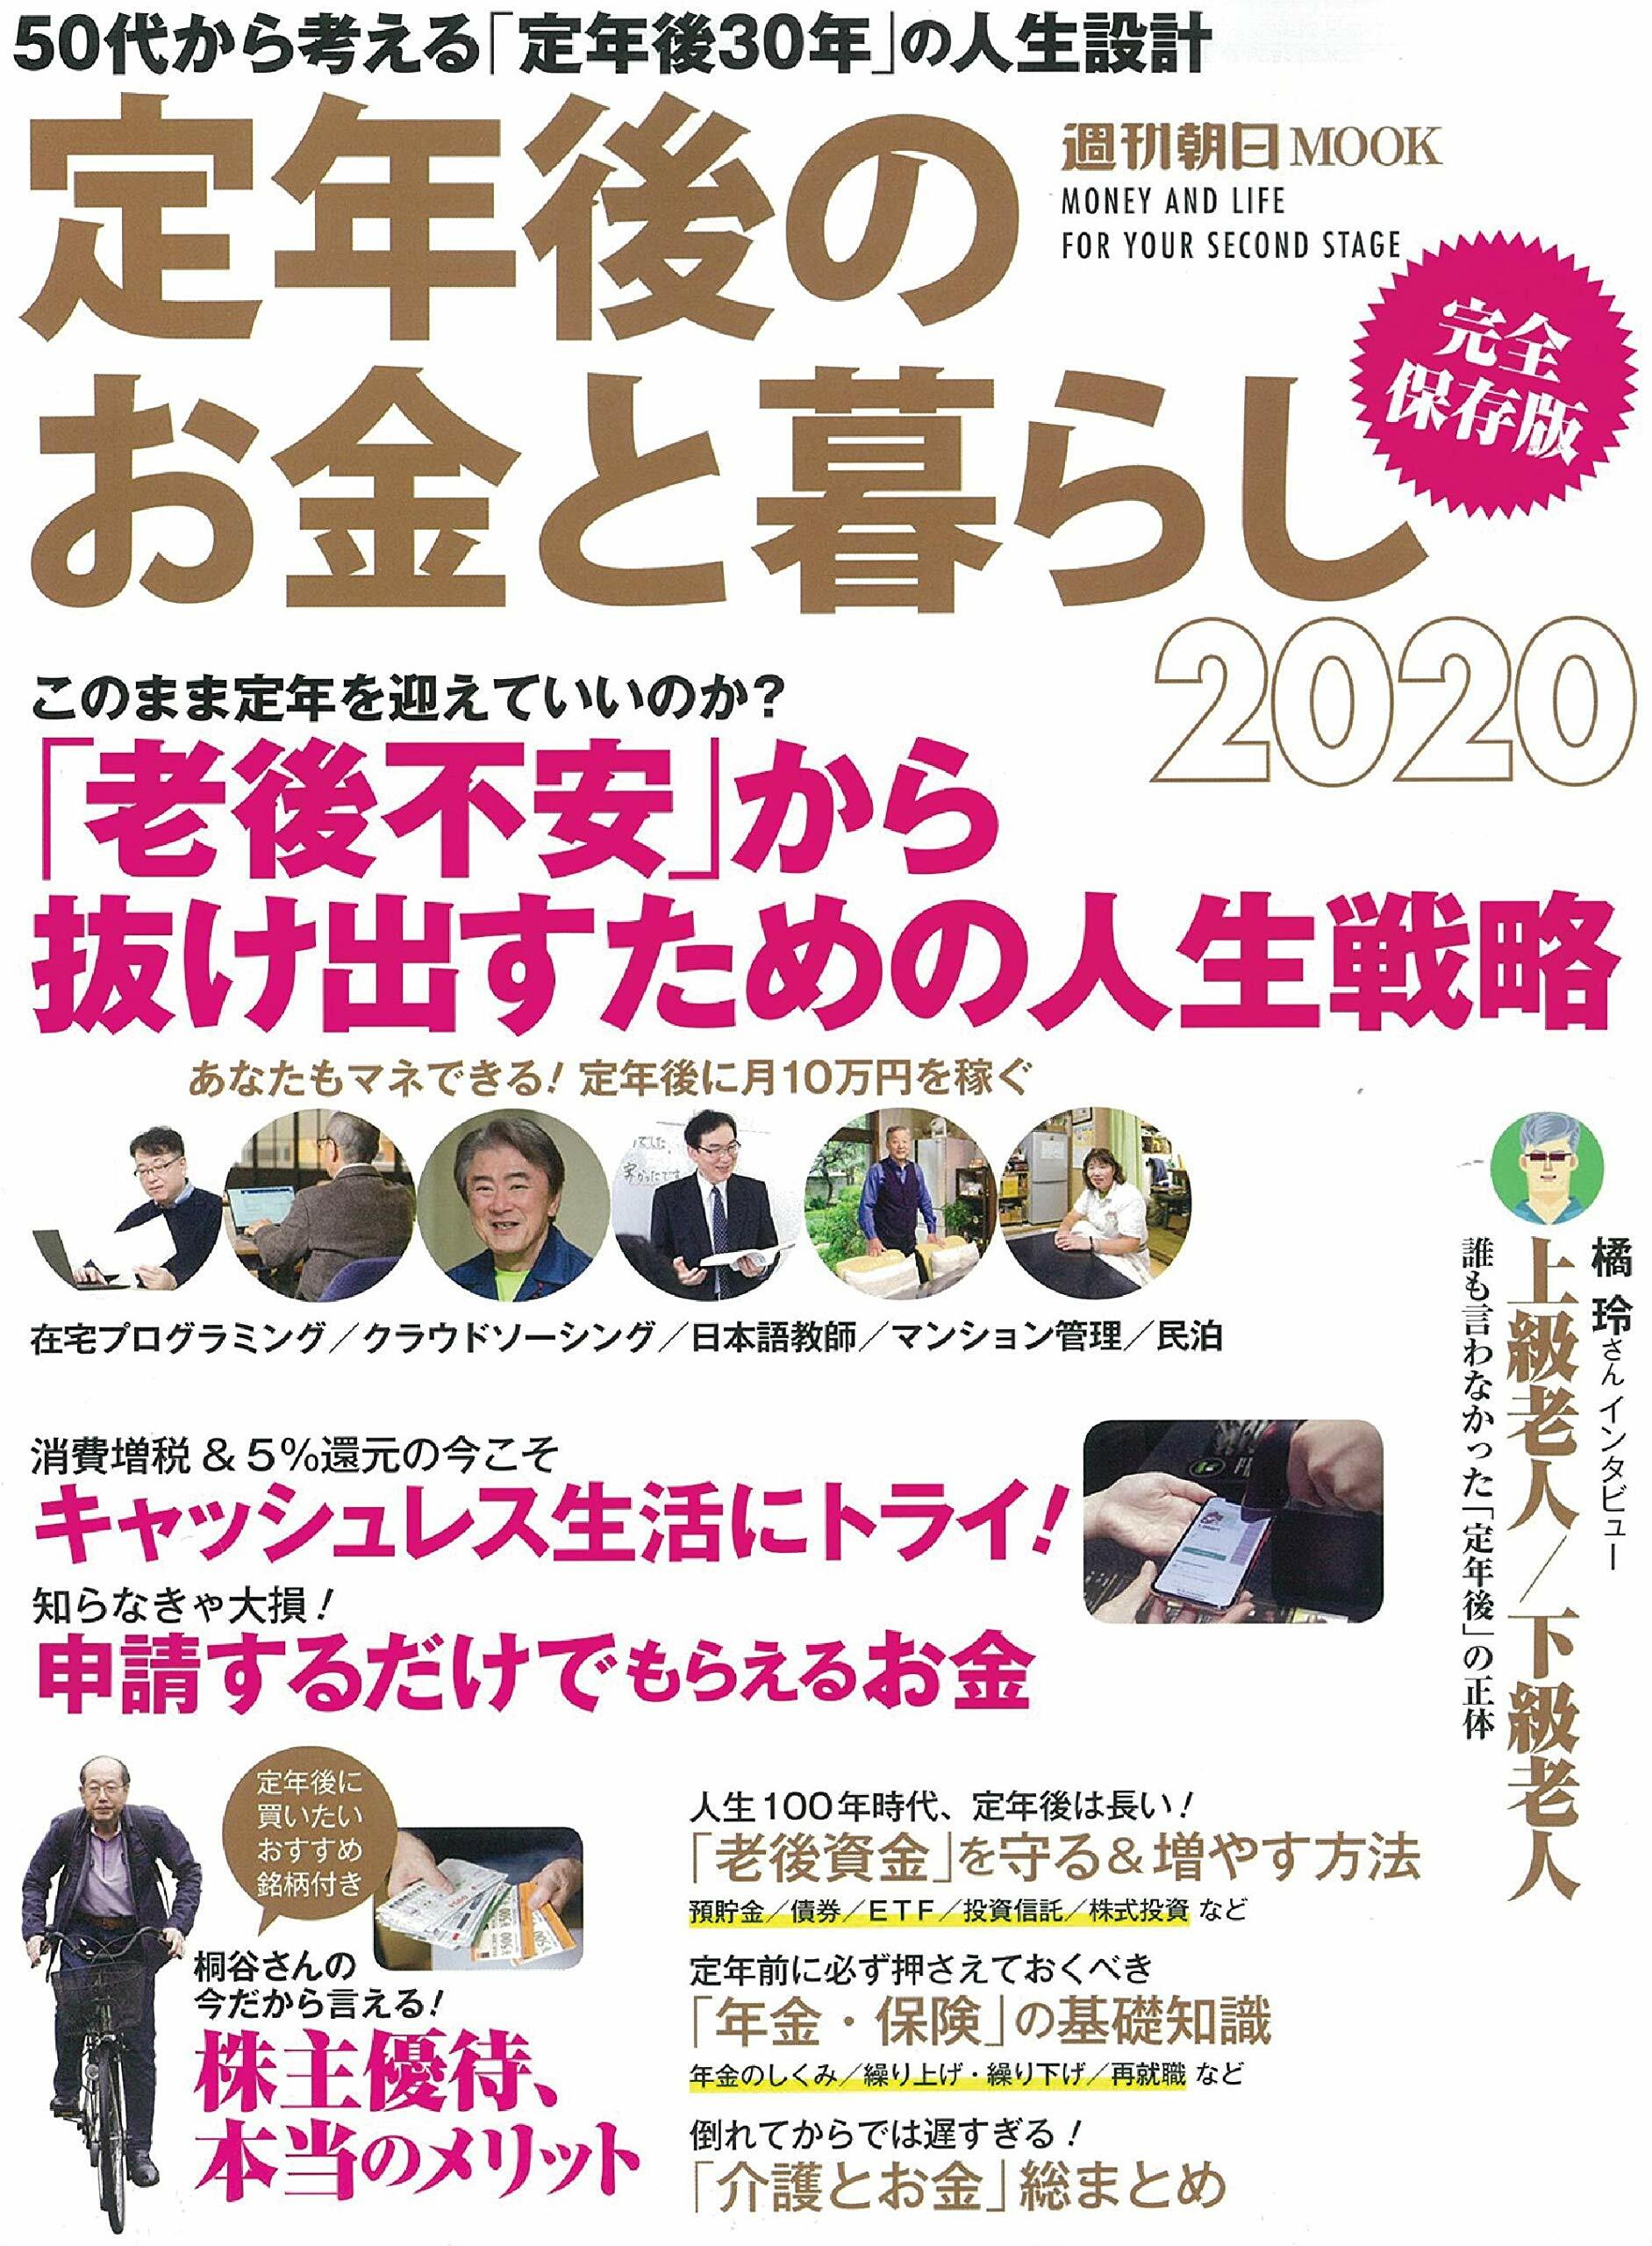 定年後のお金と暮らし 2020 (週刊朝日ムック)